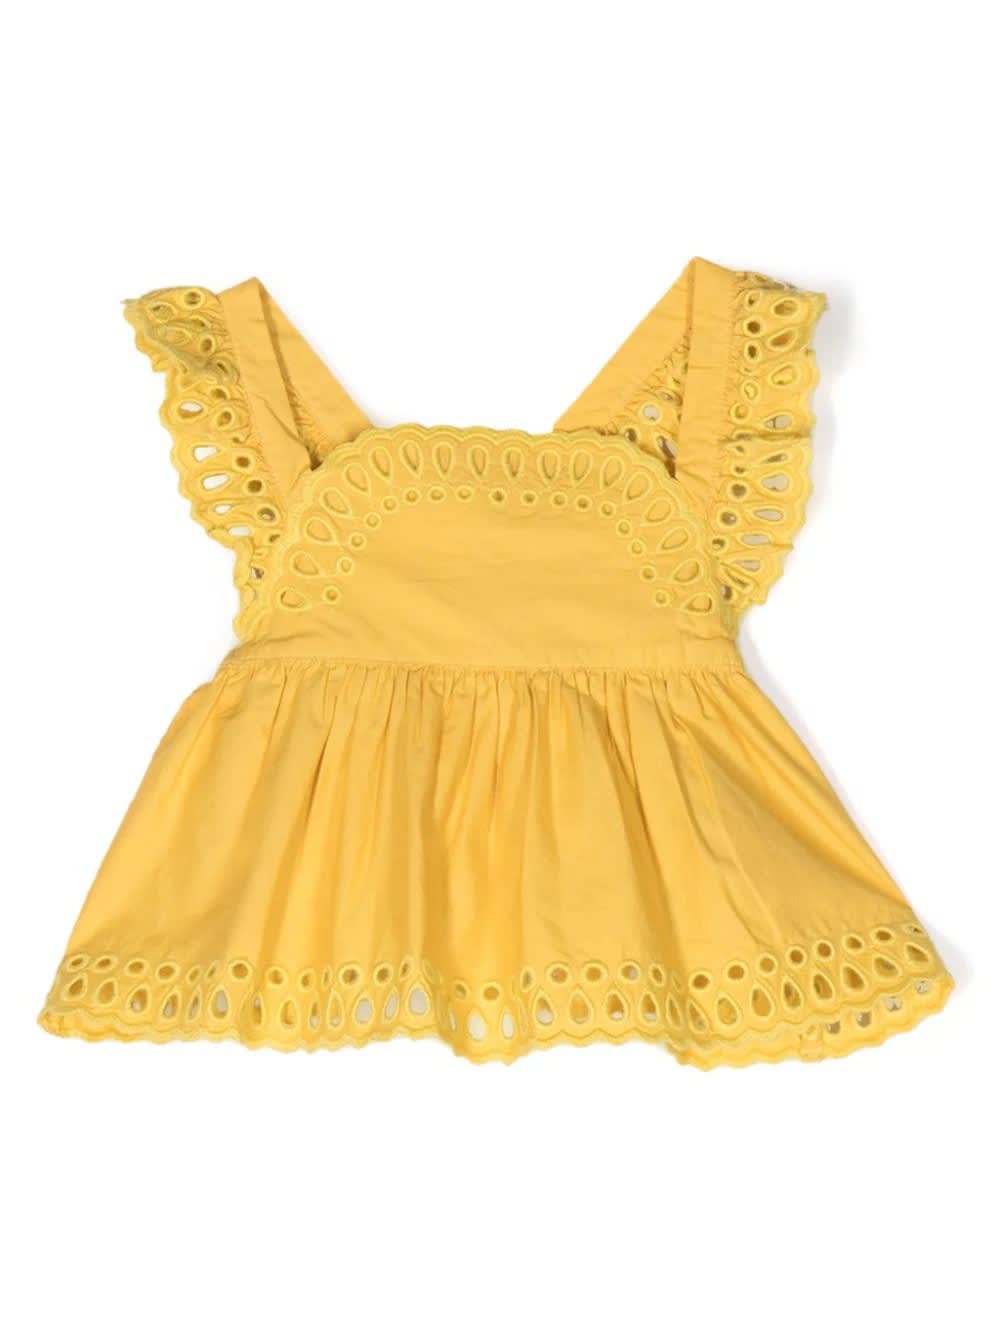 Stella Mccartney Babies' Yellow Sangallo Lace Top